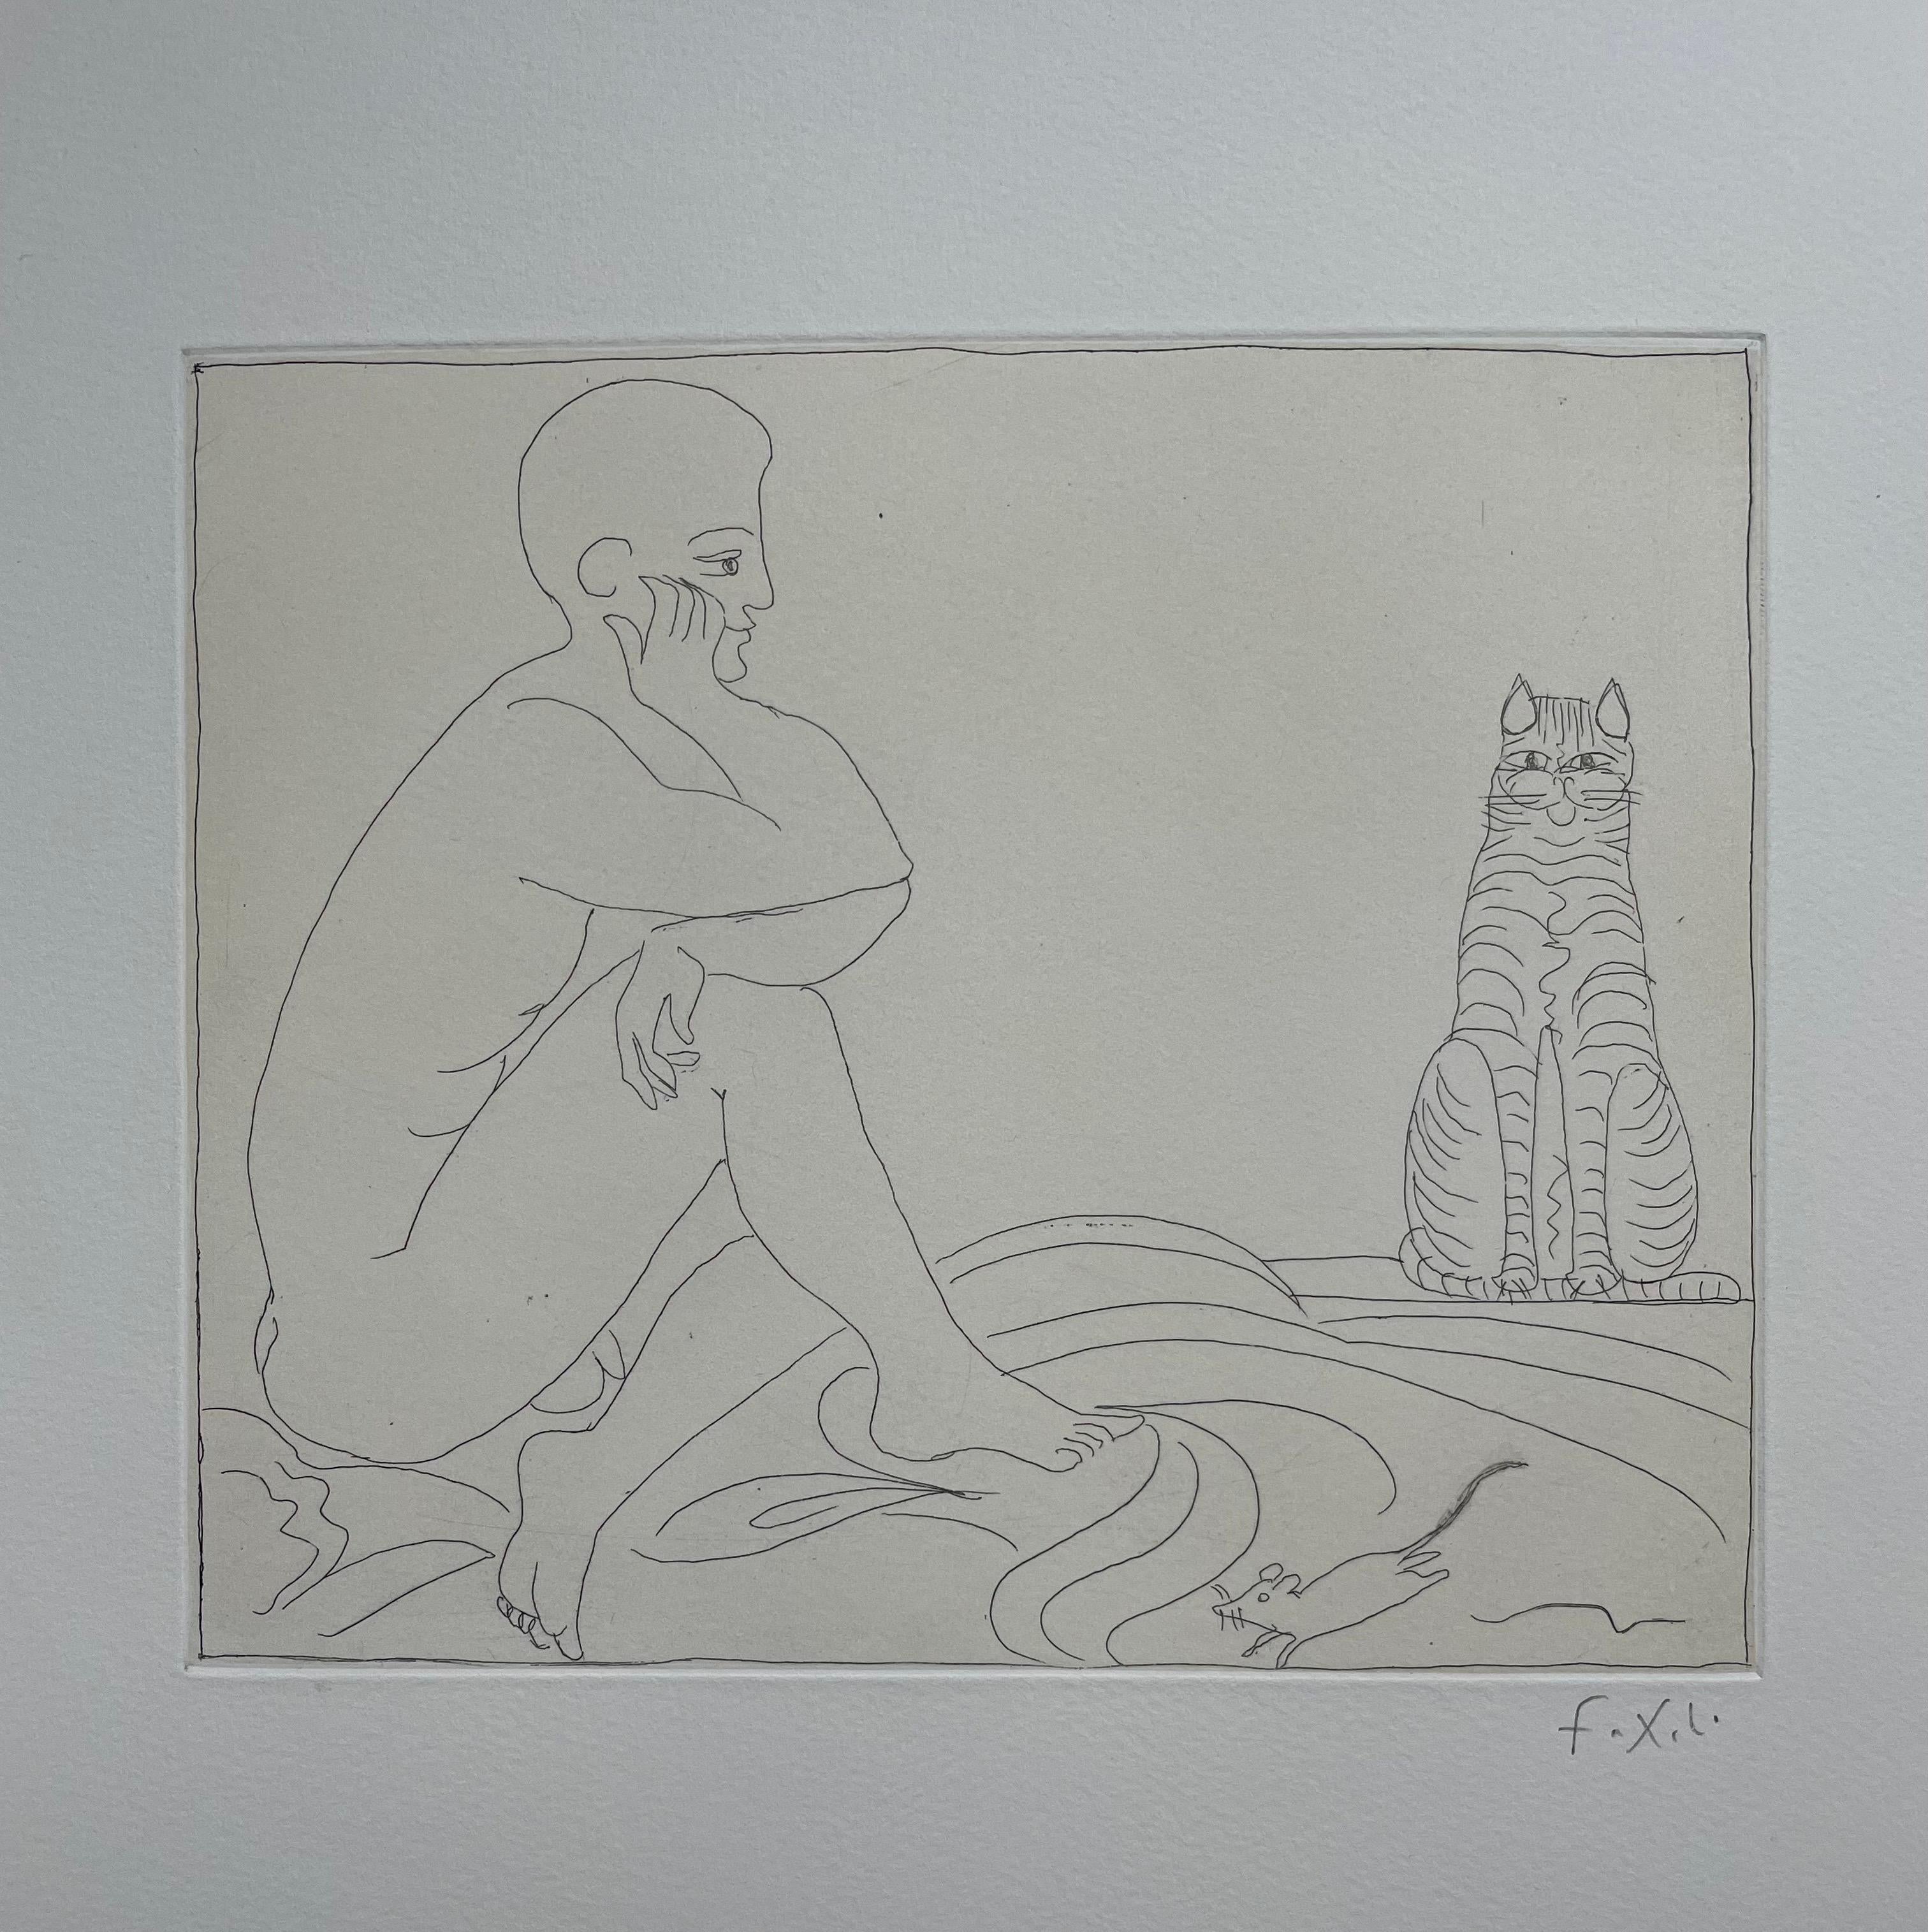 Francois-Xavier Lalanne (1927-2008) Chat, souris et homme assis, 2002
 
Cette estampe de François Xavier Lalanne représente un chat, une souris et un homme assis. Le chat rappelle deux sculptures de l'artiste : Chat Polymorphe (1968) et Chat